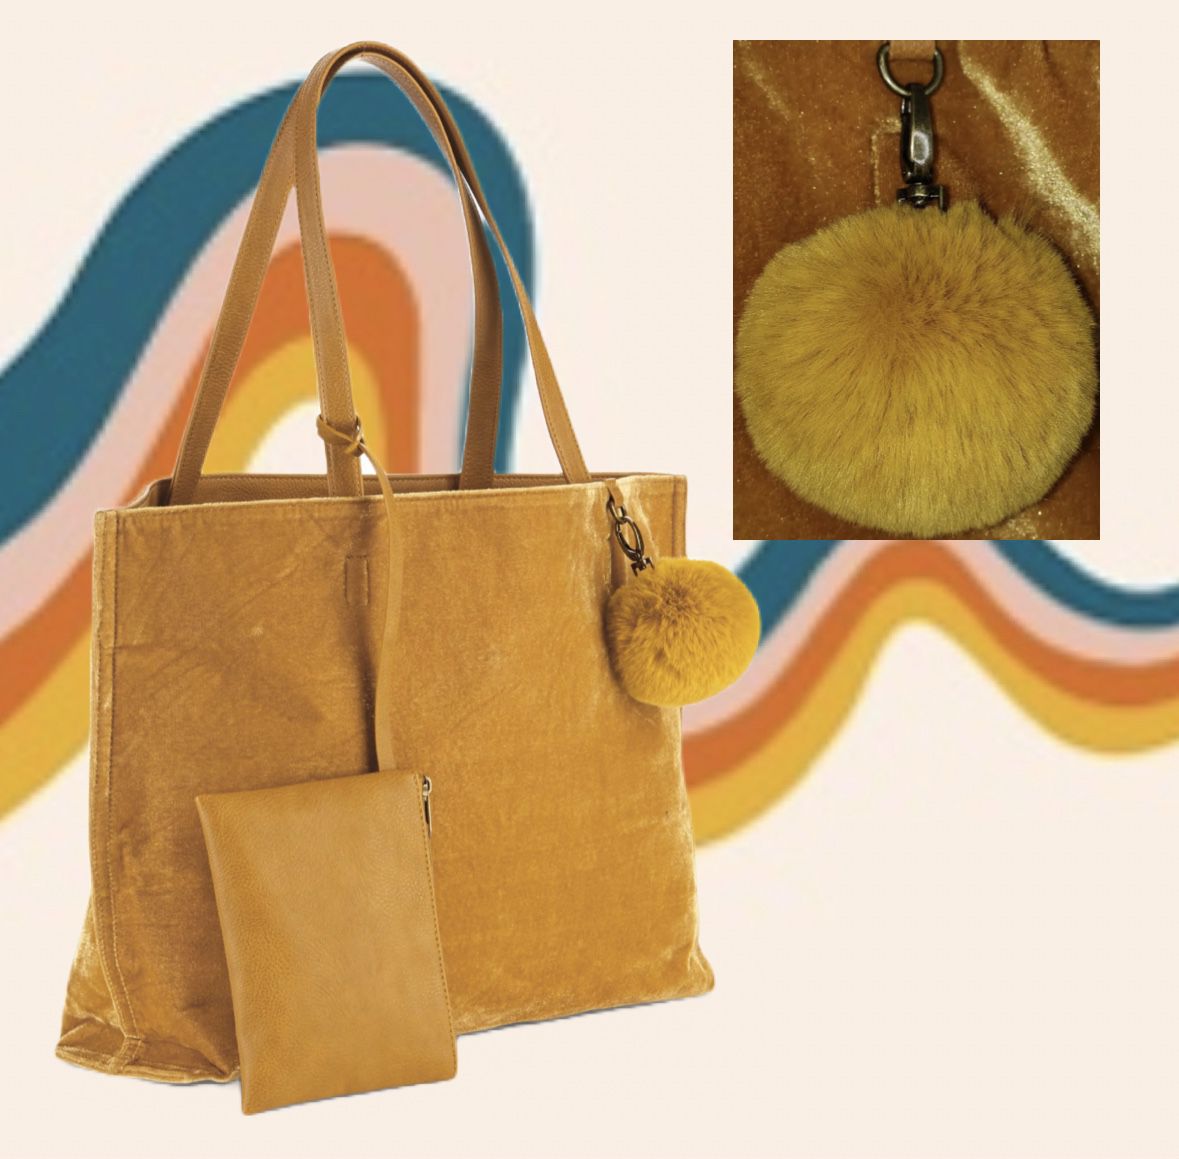 OK Crushed Velvet Bag Wristlet Pom Mustard Yellow NWOT 20”